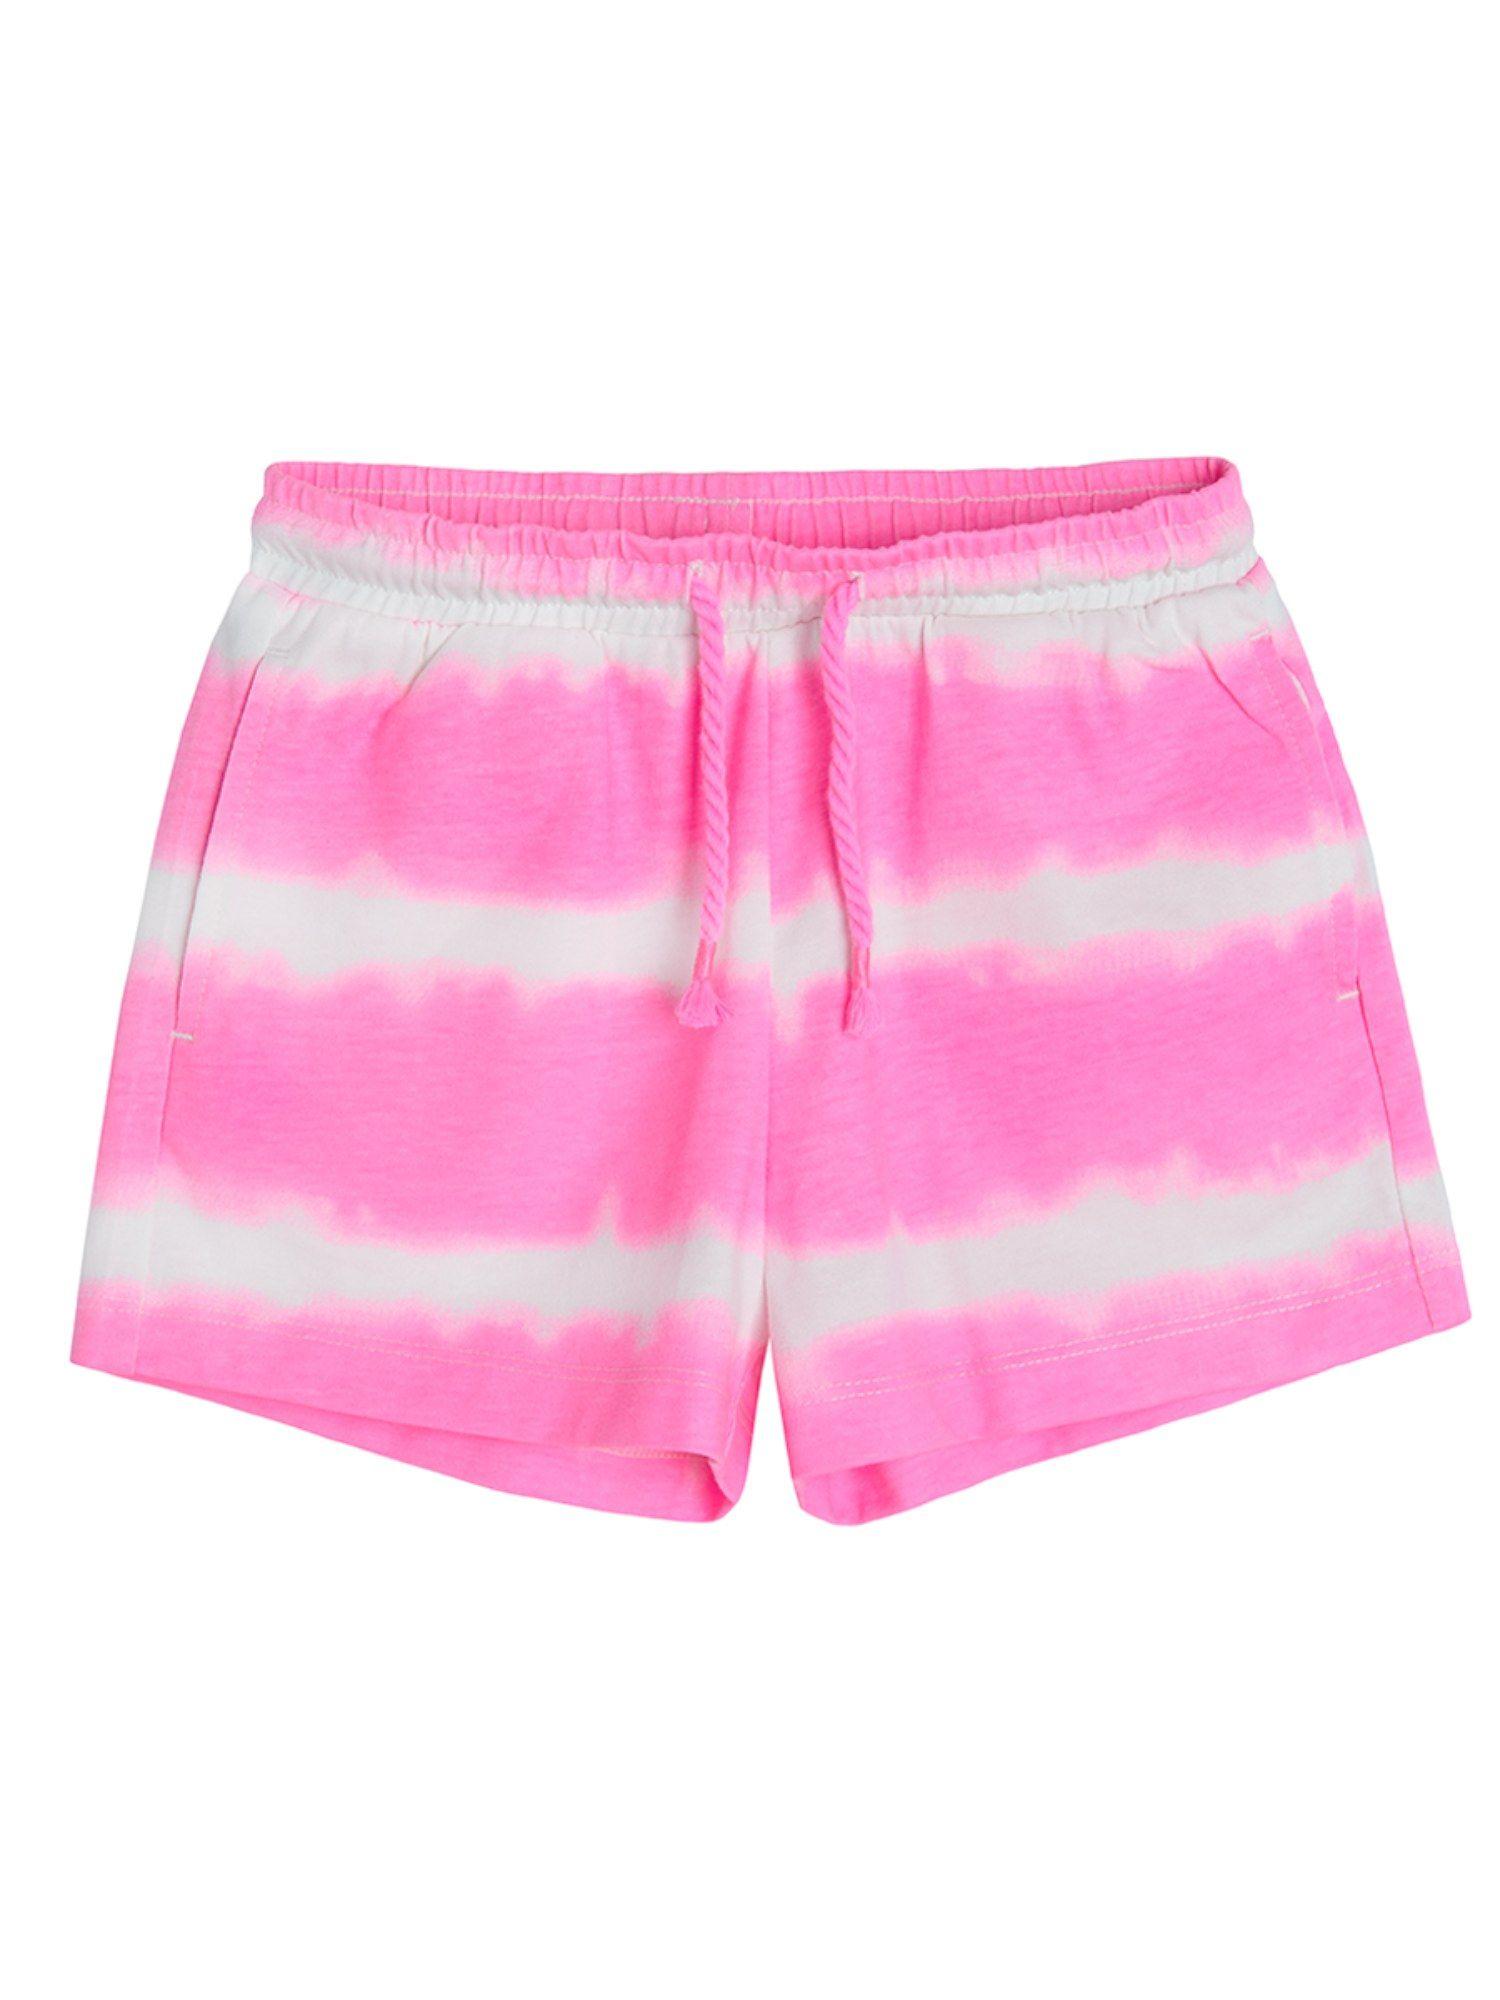 smyk girls pink tie dye shorts